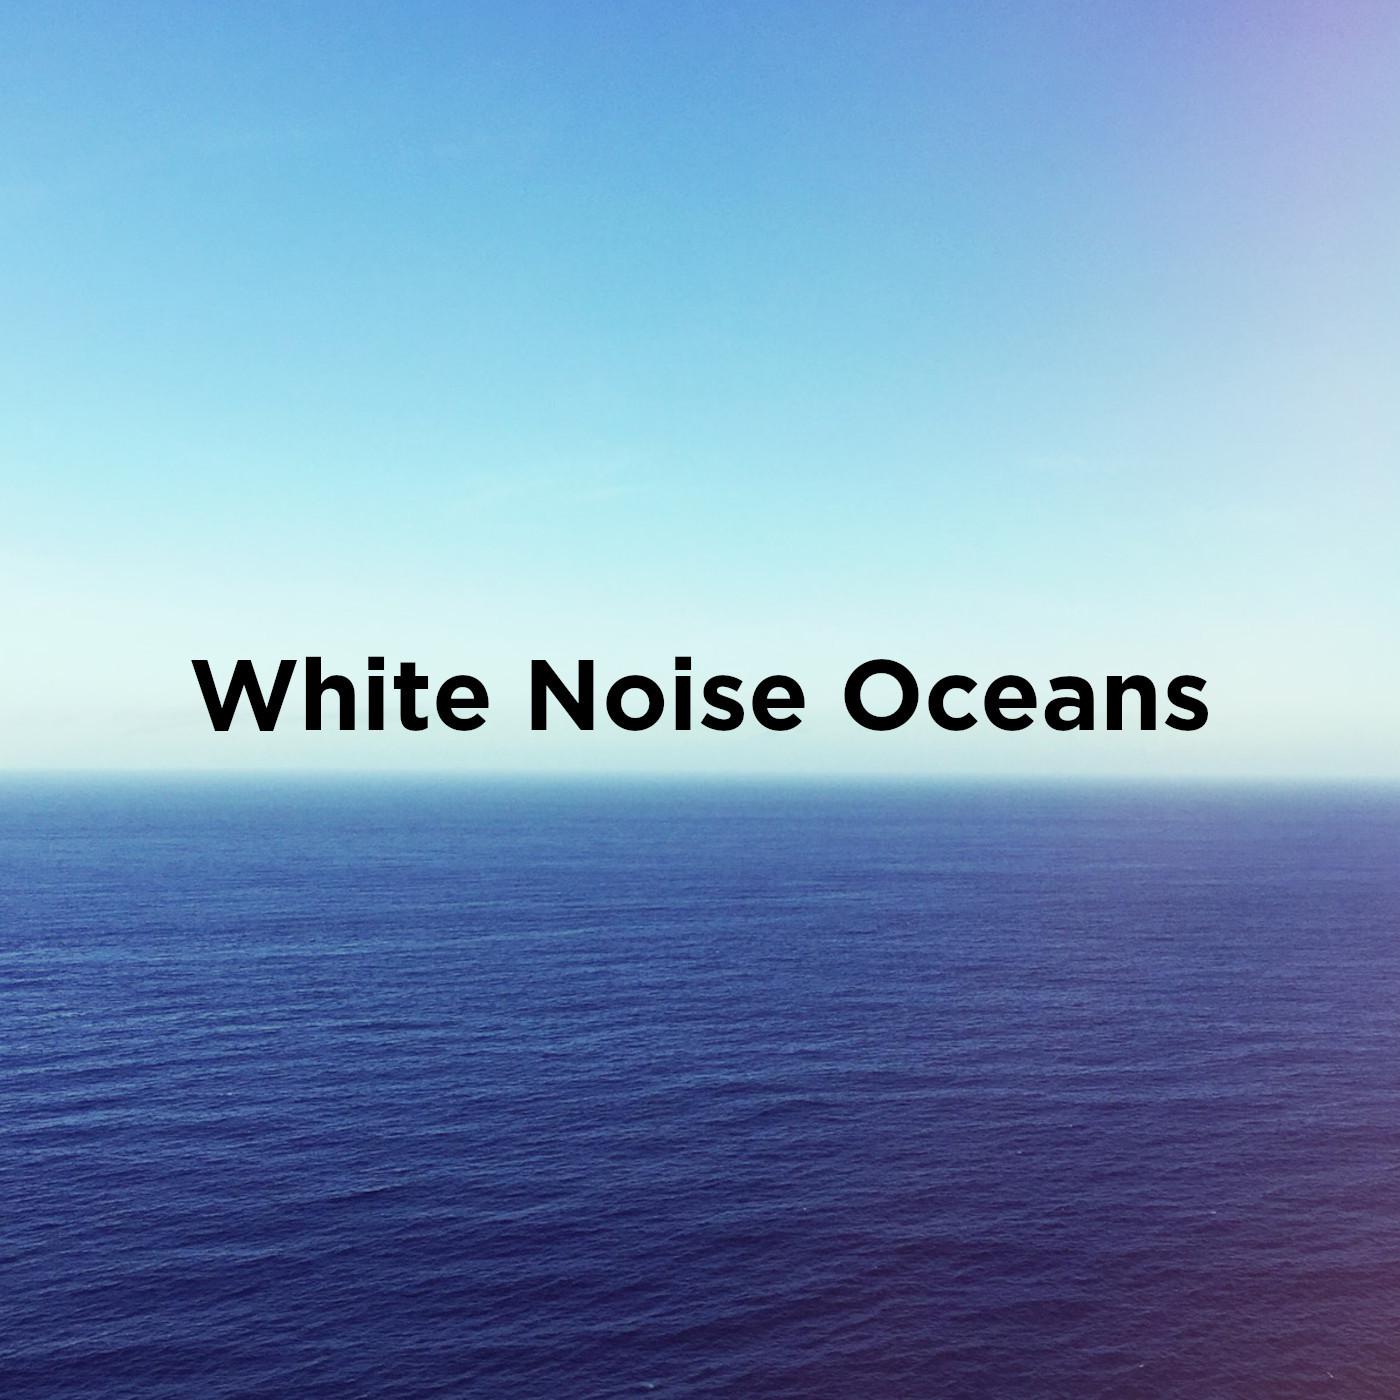 White Noise Oceans